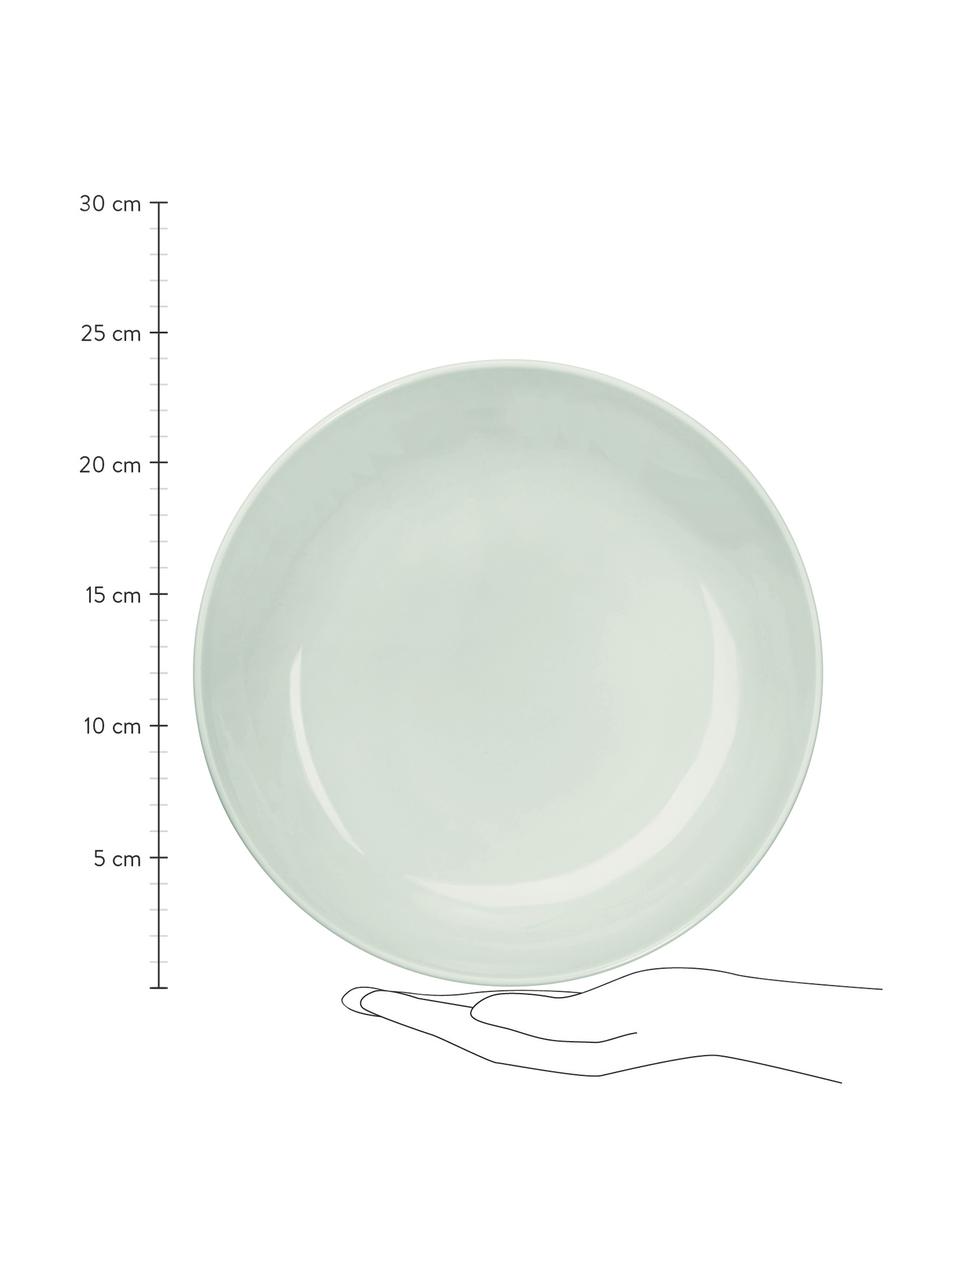 Porseleinen soepborden Kolibri in glanzend mintgroen, 6 stuks, Porselein, Mintgroen, Ø 24 cm